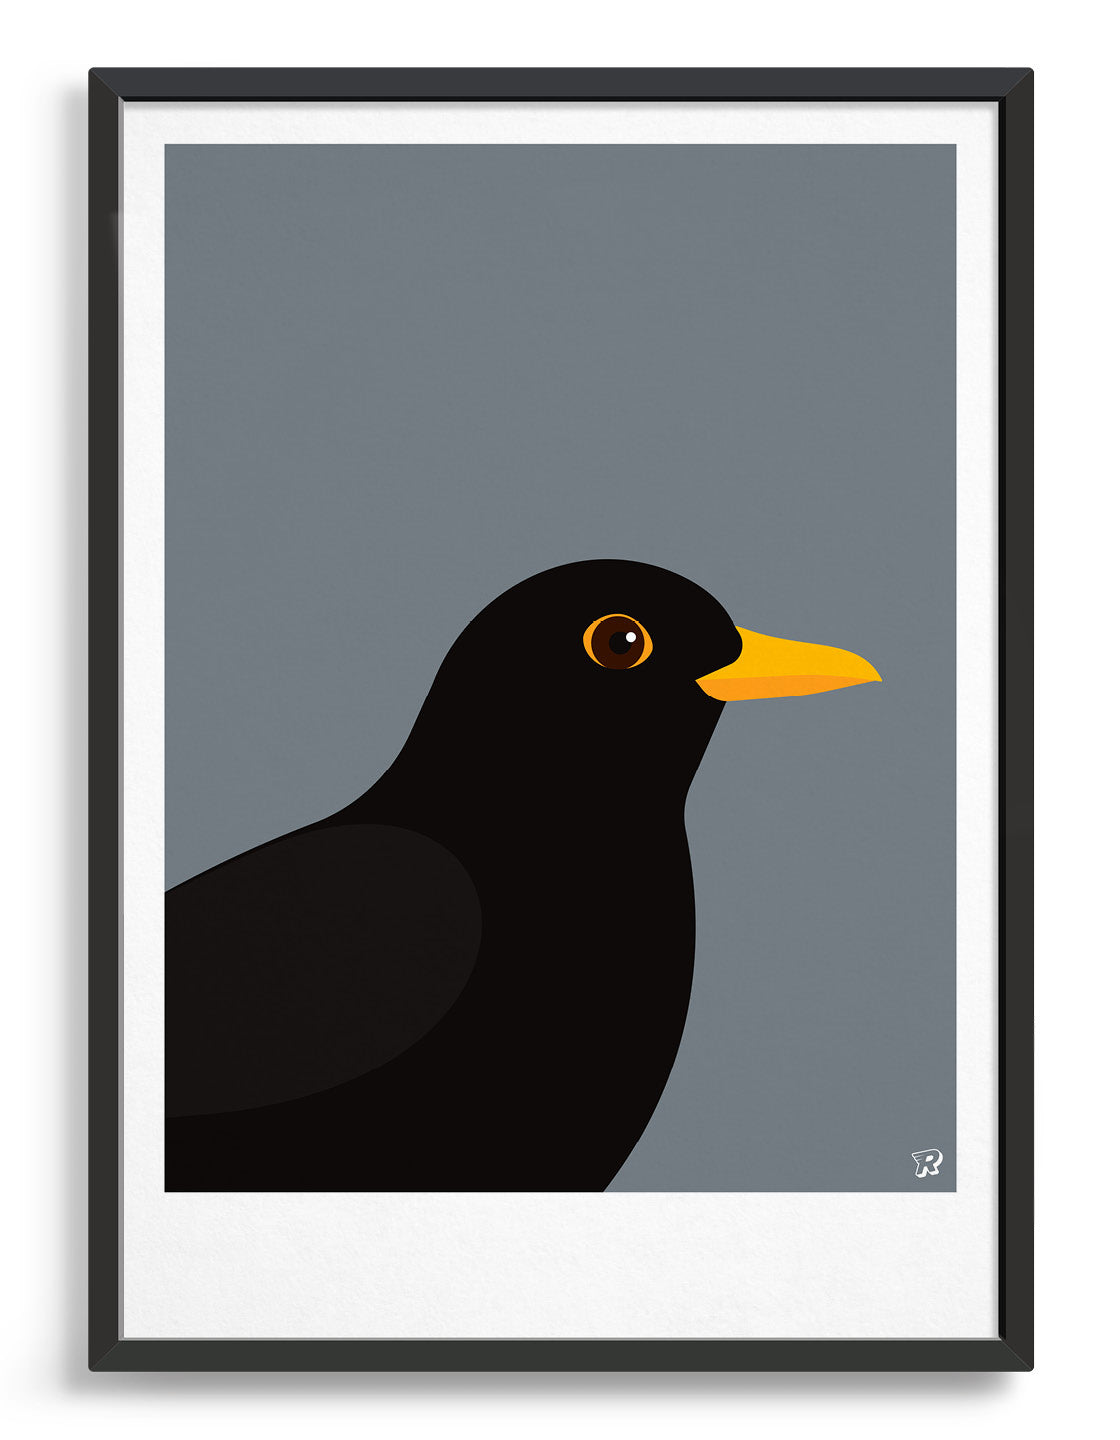 modern Blackbird illustration against a dark grey background